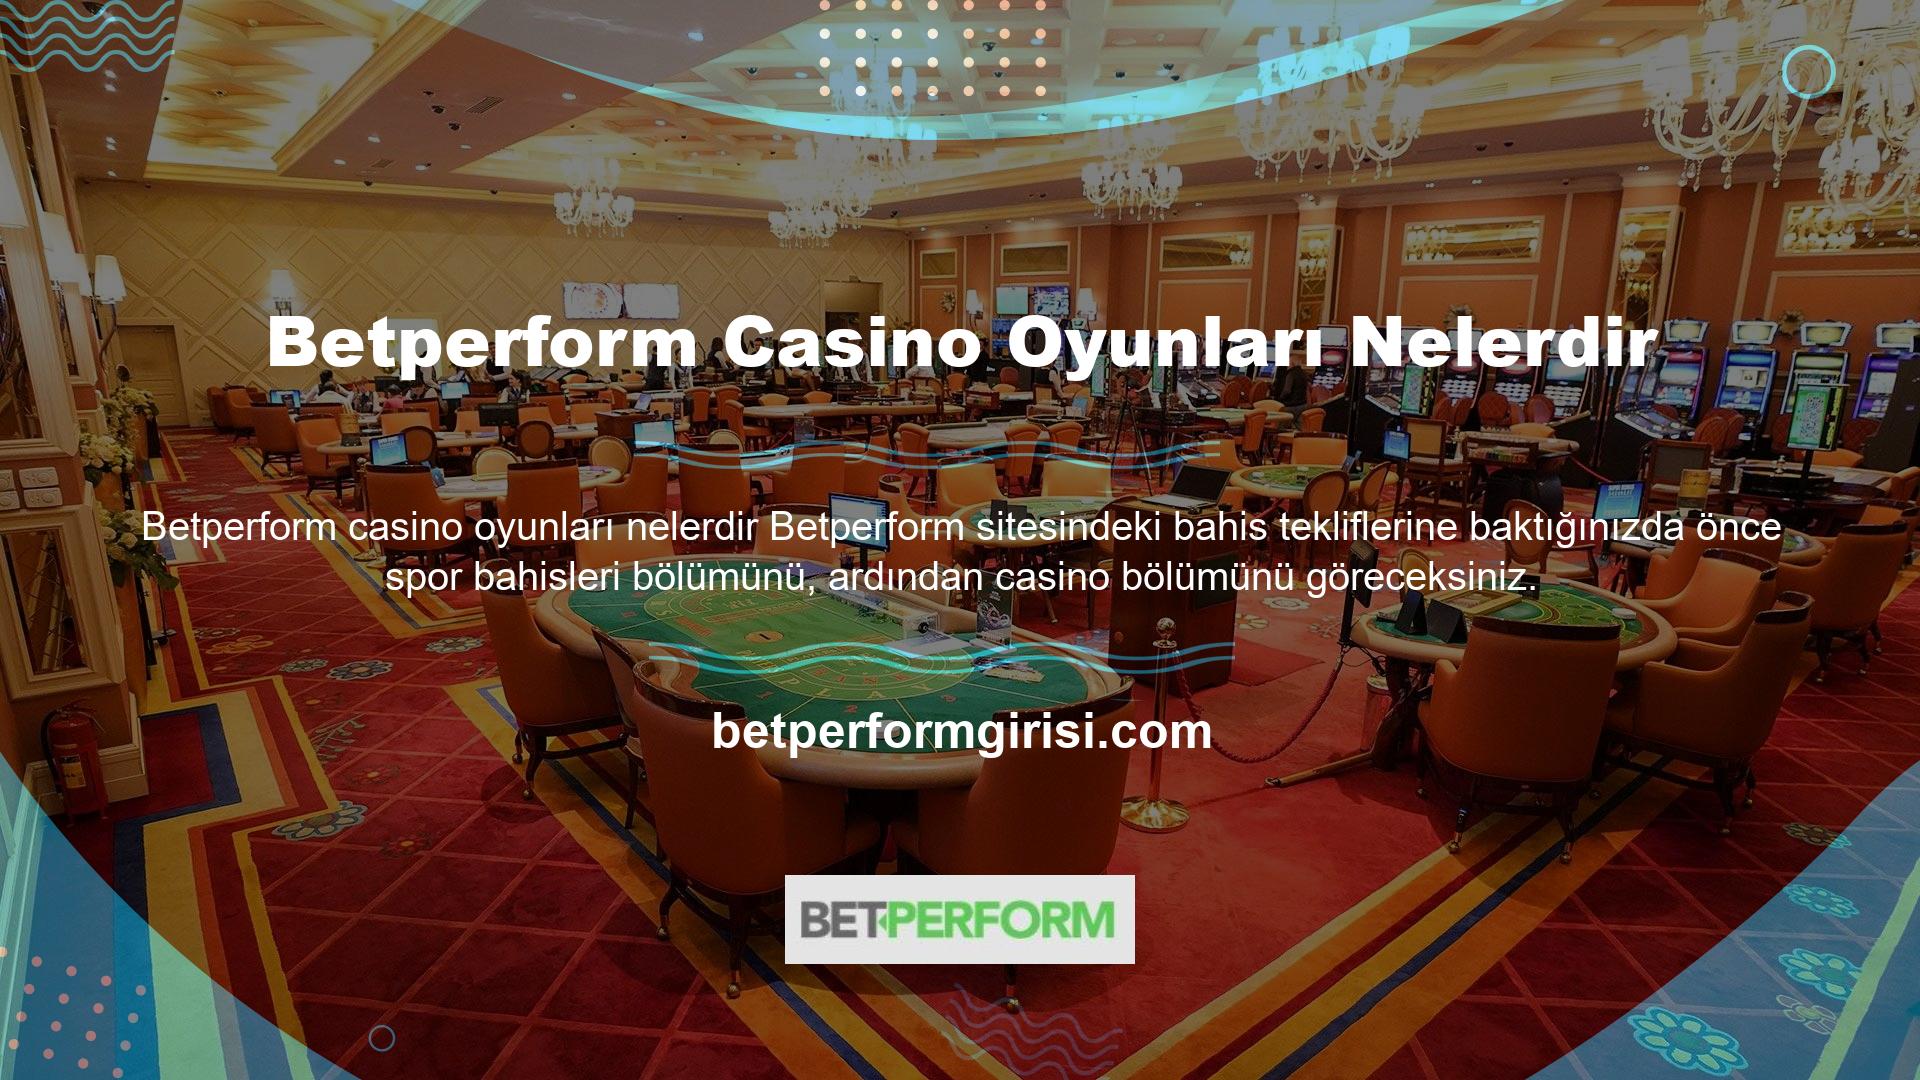 Peki Betperform casino oyunları nelerdir? Sitede çok sayıda casino oyunu bulunmaktadır